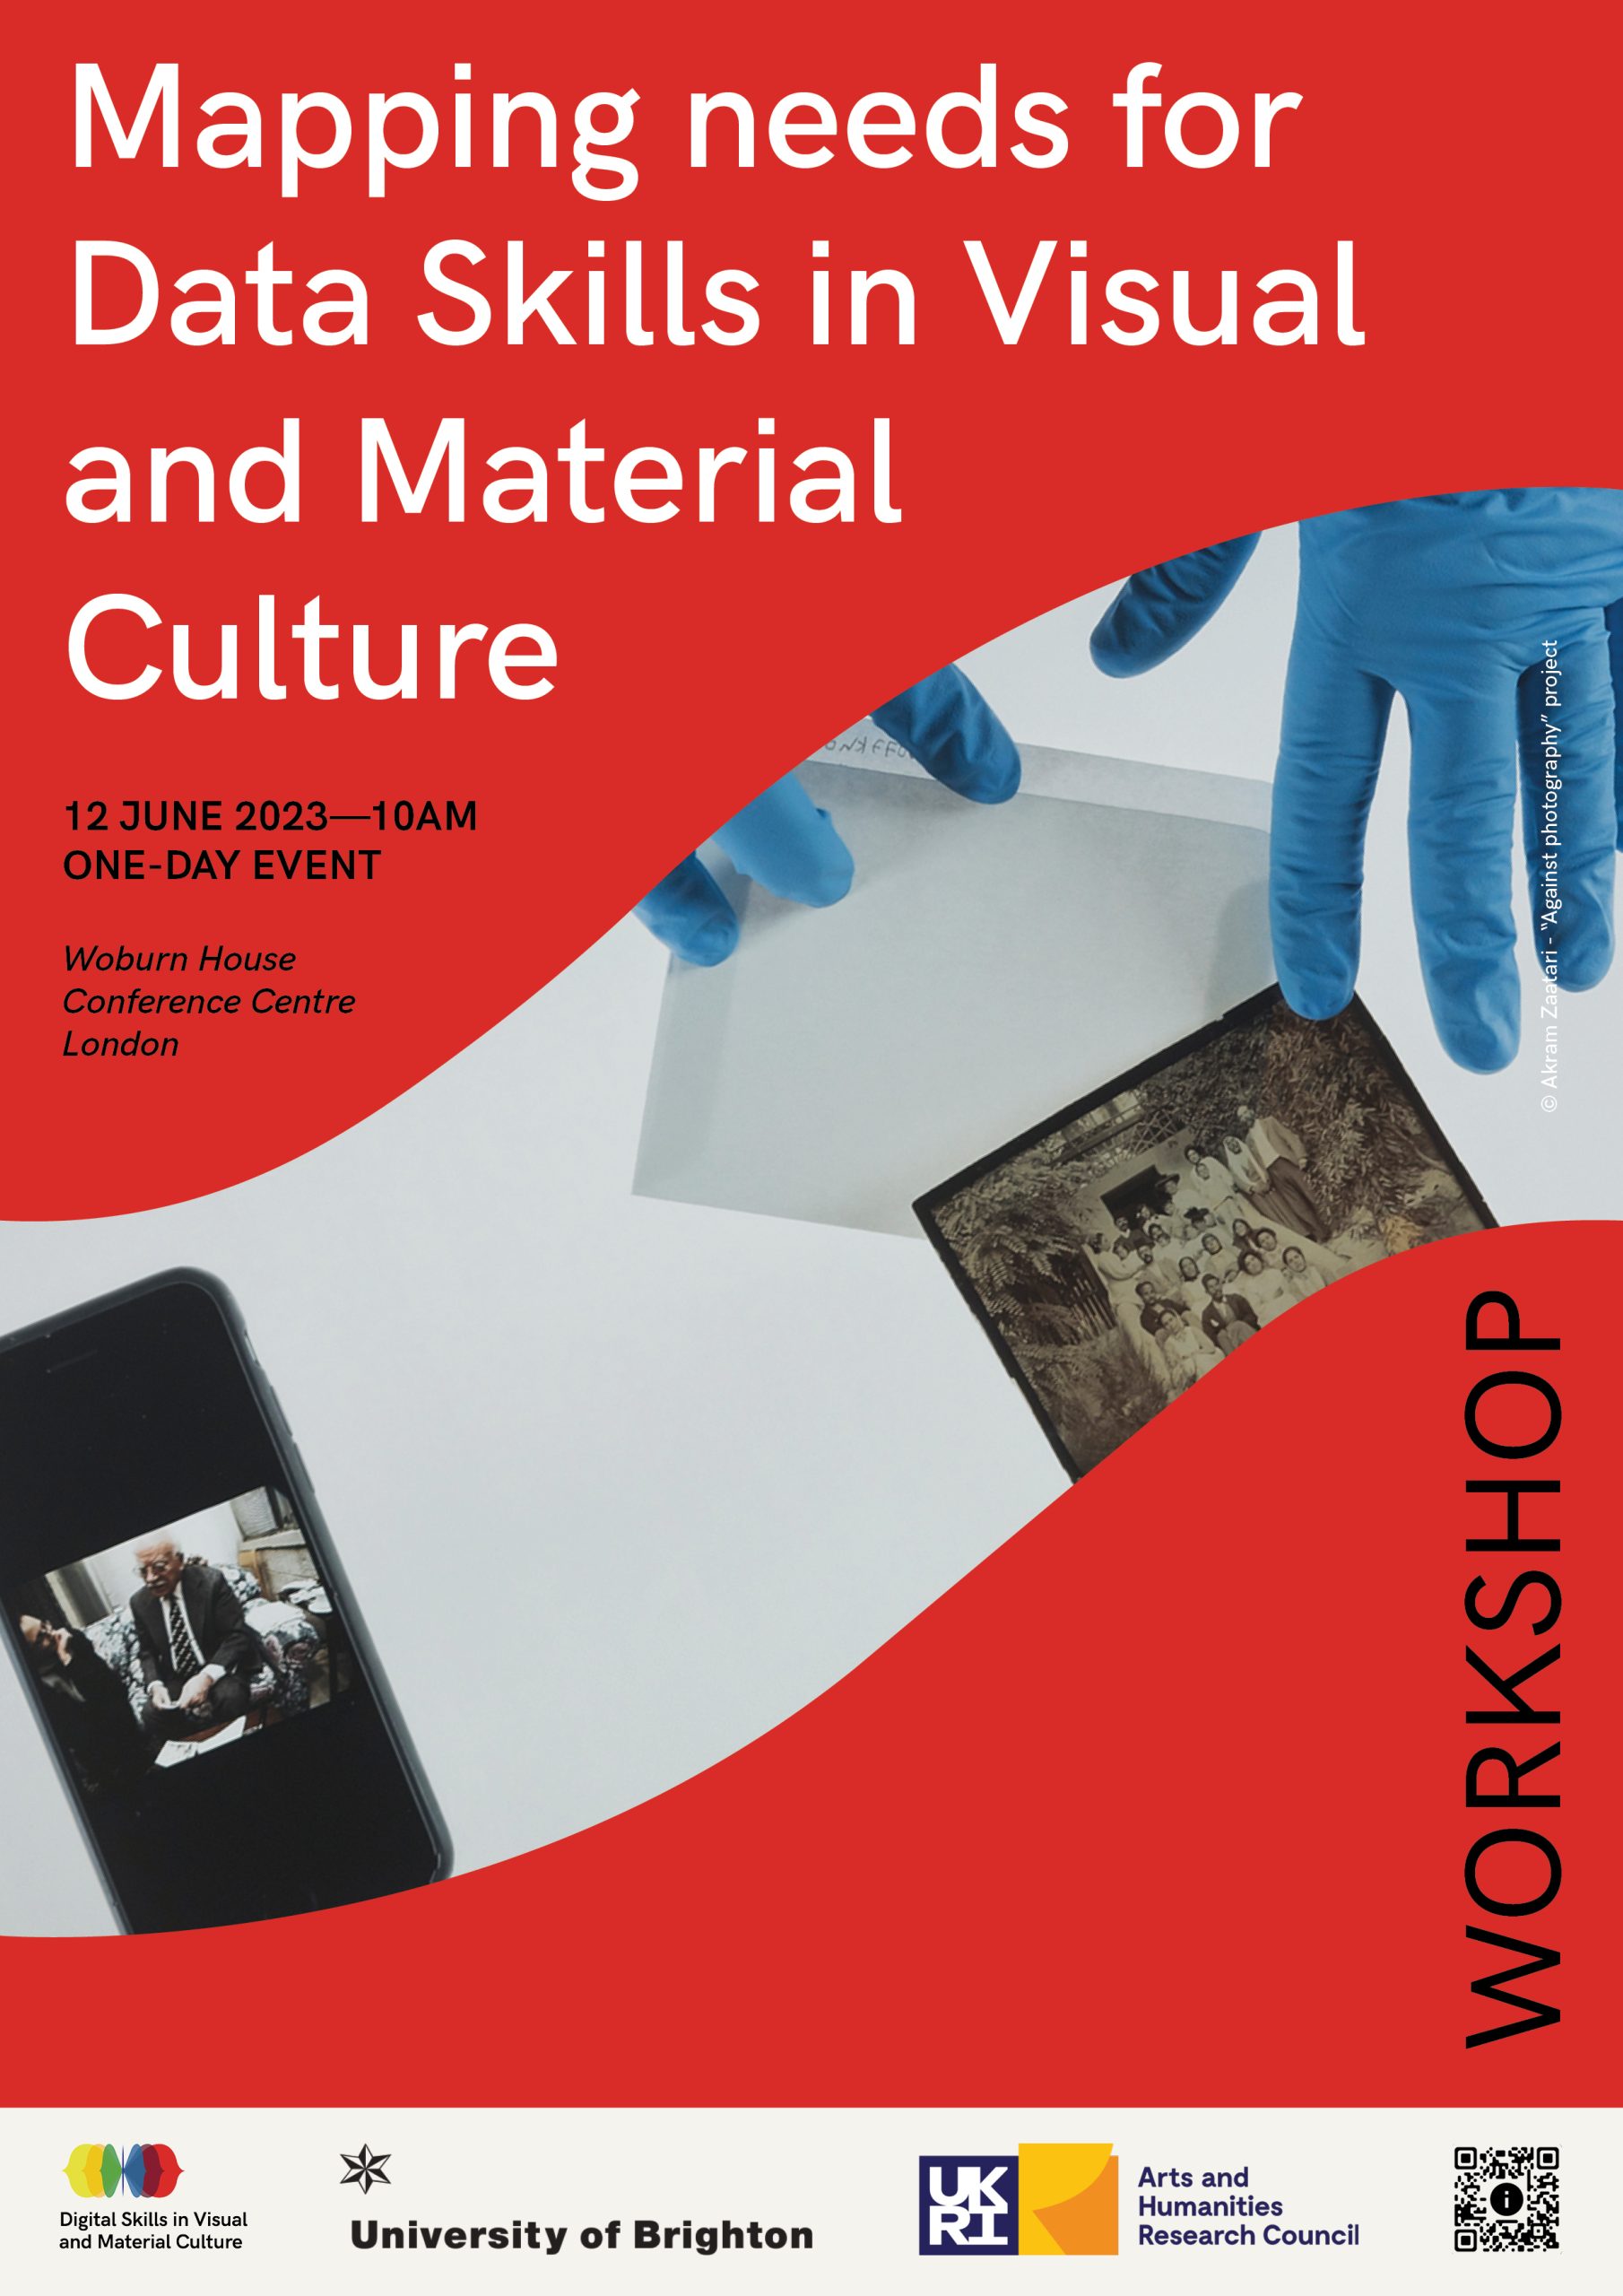 Workshop: Digital Skills in Visual and Material Culture